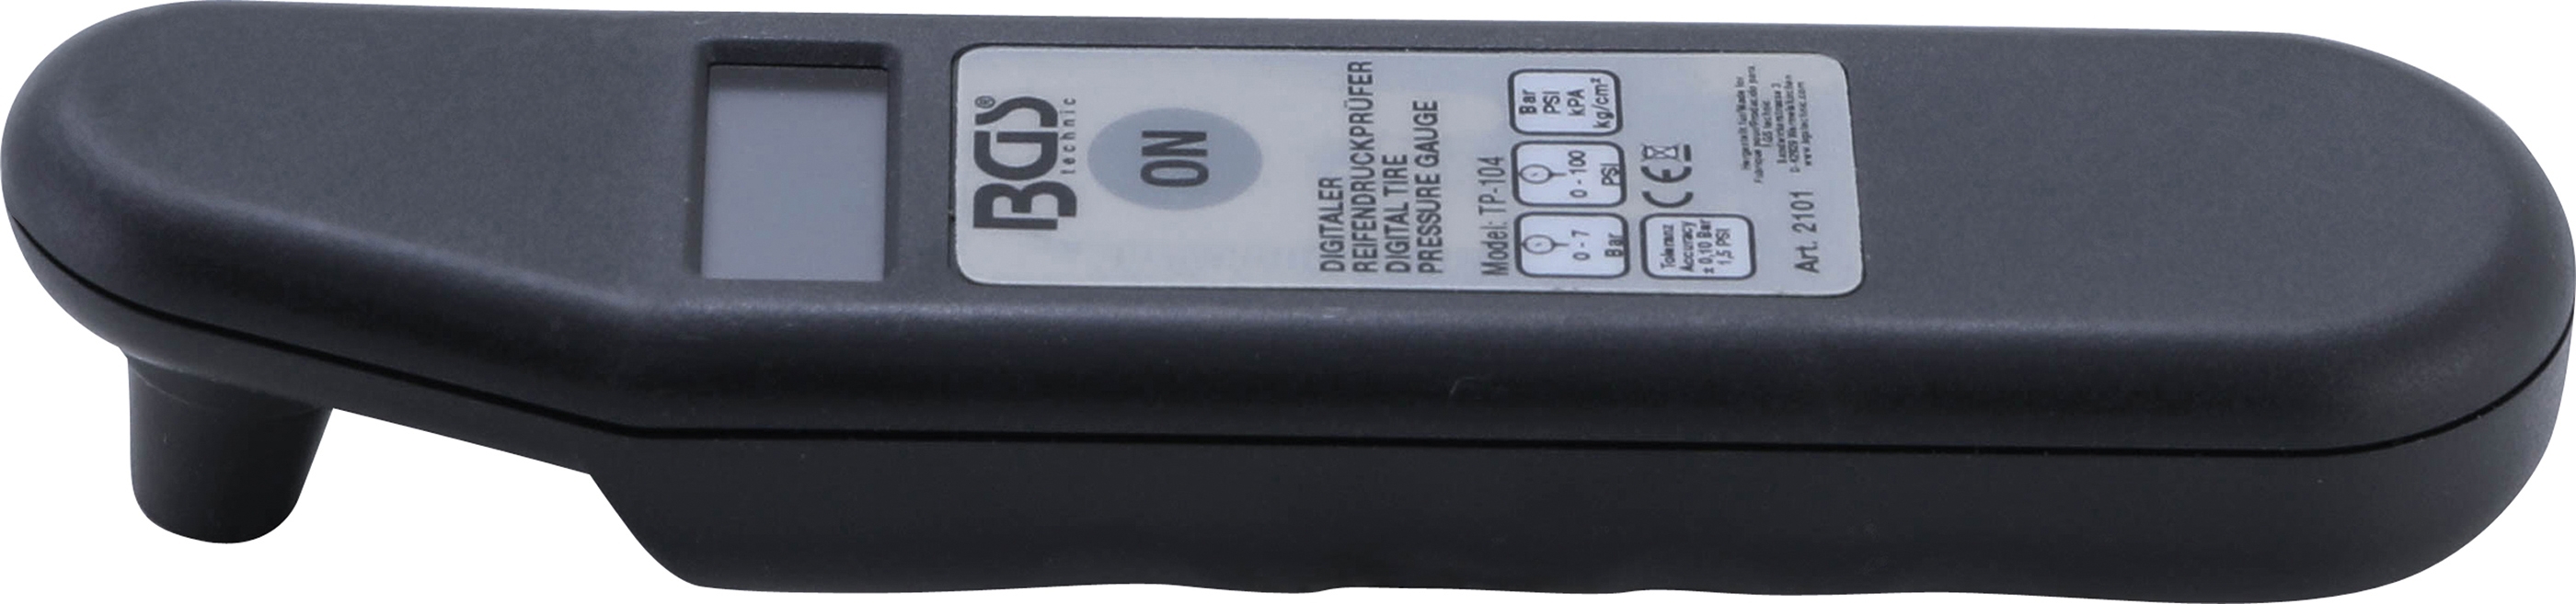 Digitaler Reifendruckprüfer BGS 2101